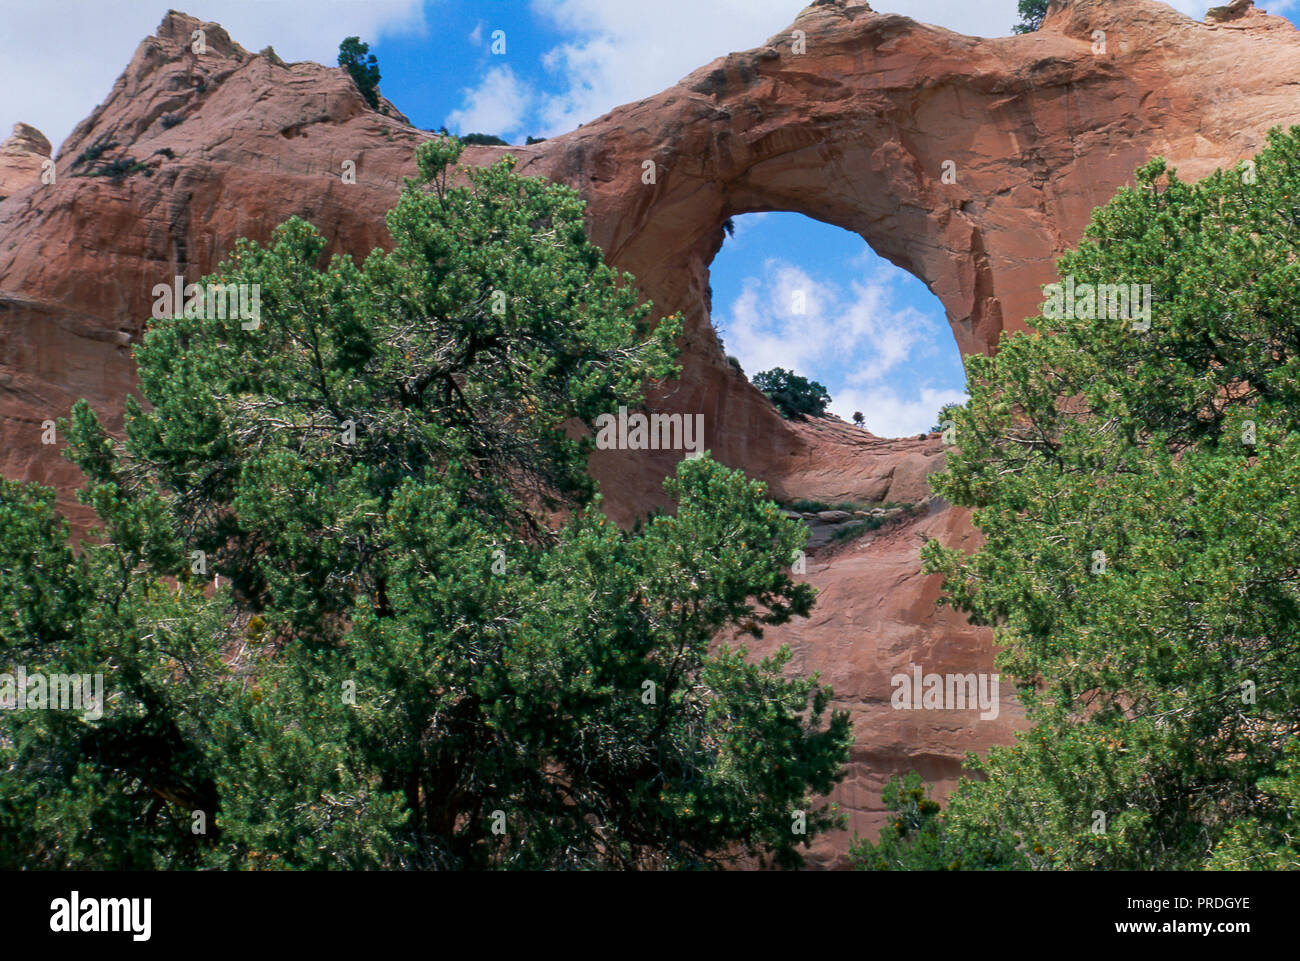 Natural Arch von Window Rock, Arizona, Navajo Nation Wahrzeichen. Foto Stockfoto